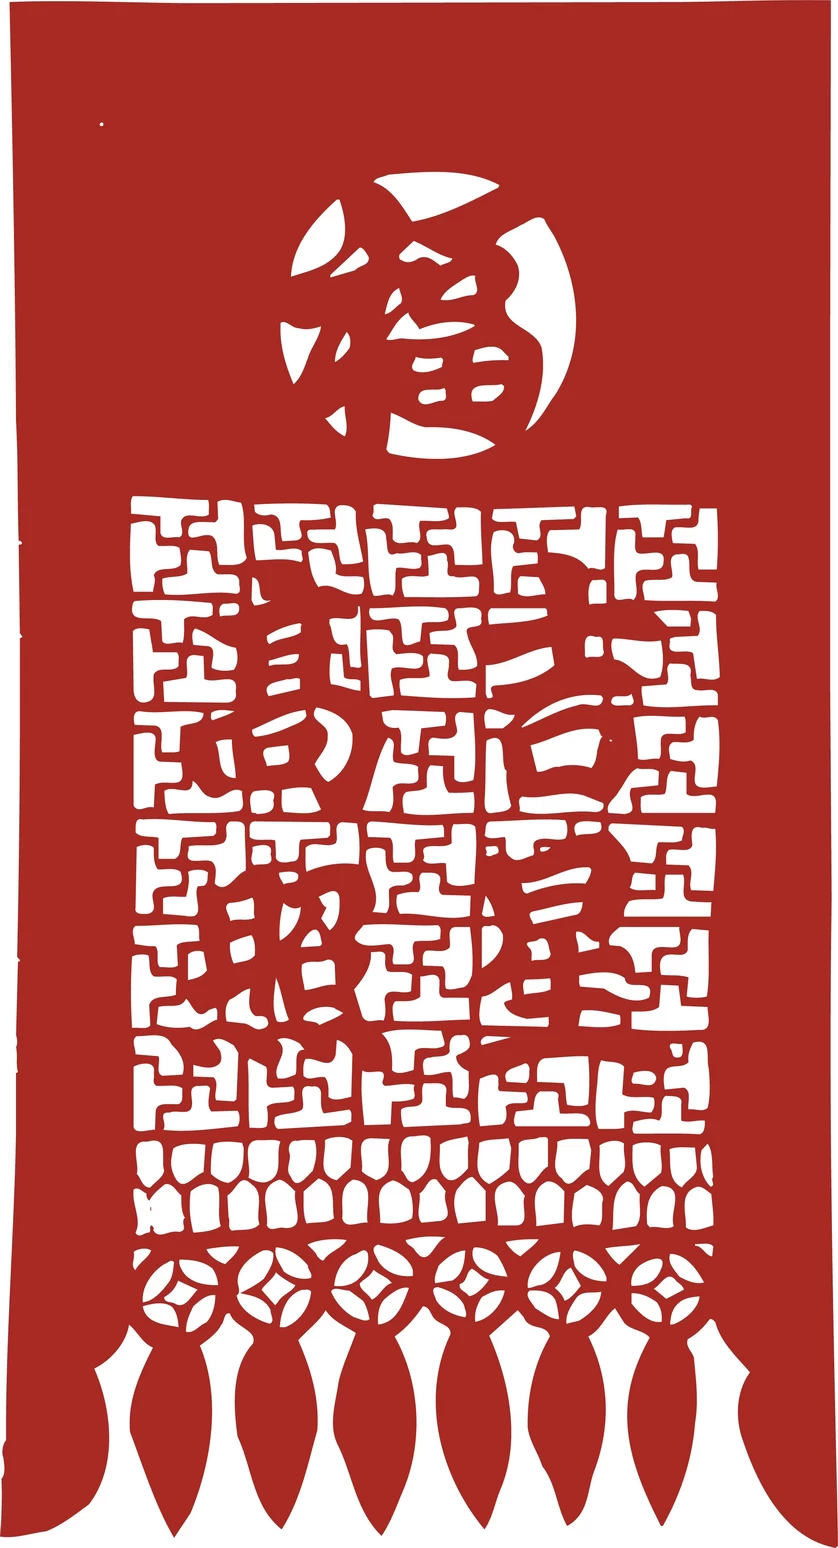 中国风中式传统喜庆民俗人物动物窗花剪纸插画边框AI矢量PNG素材【1964】